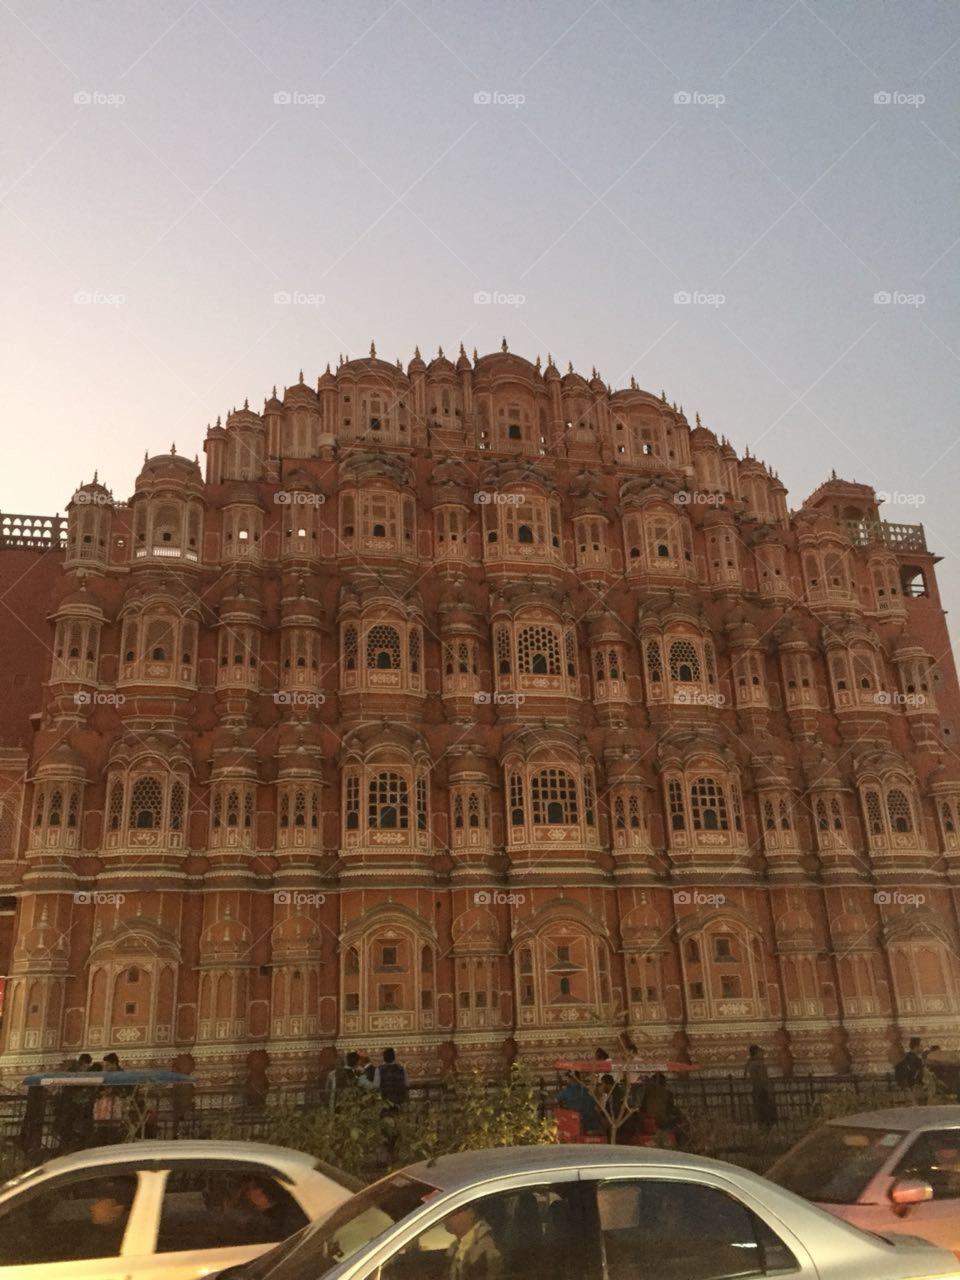 Hawa mahal of pink city (Jaipur)